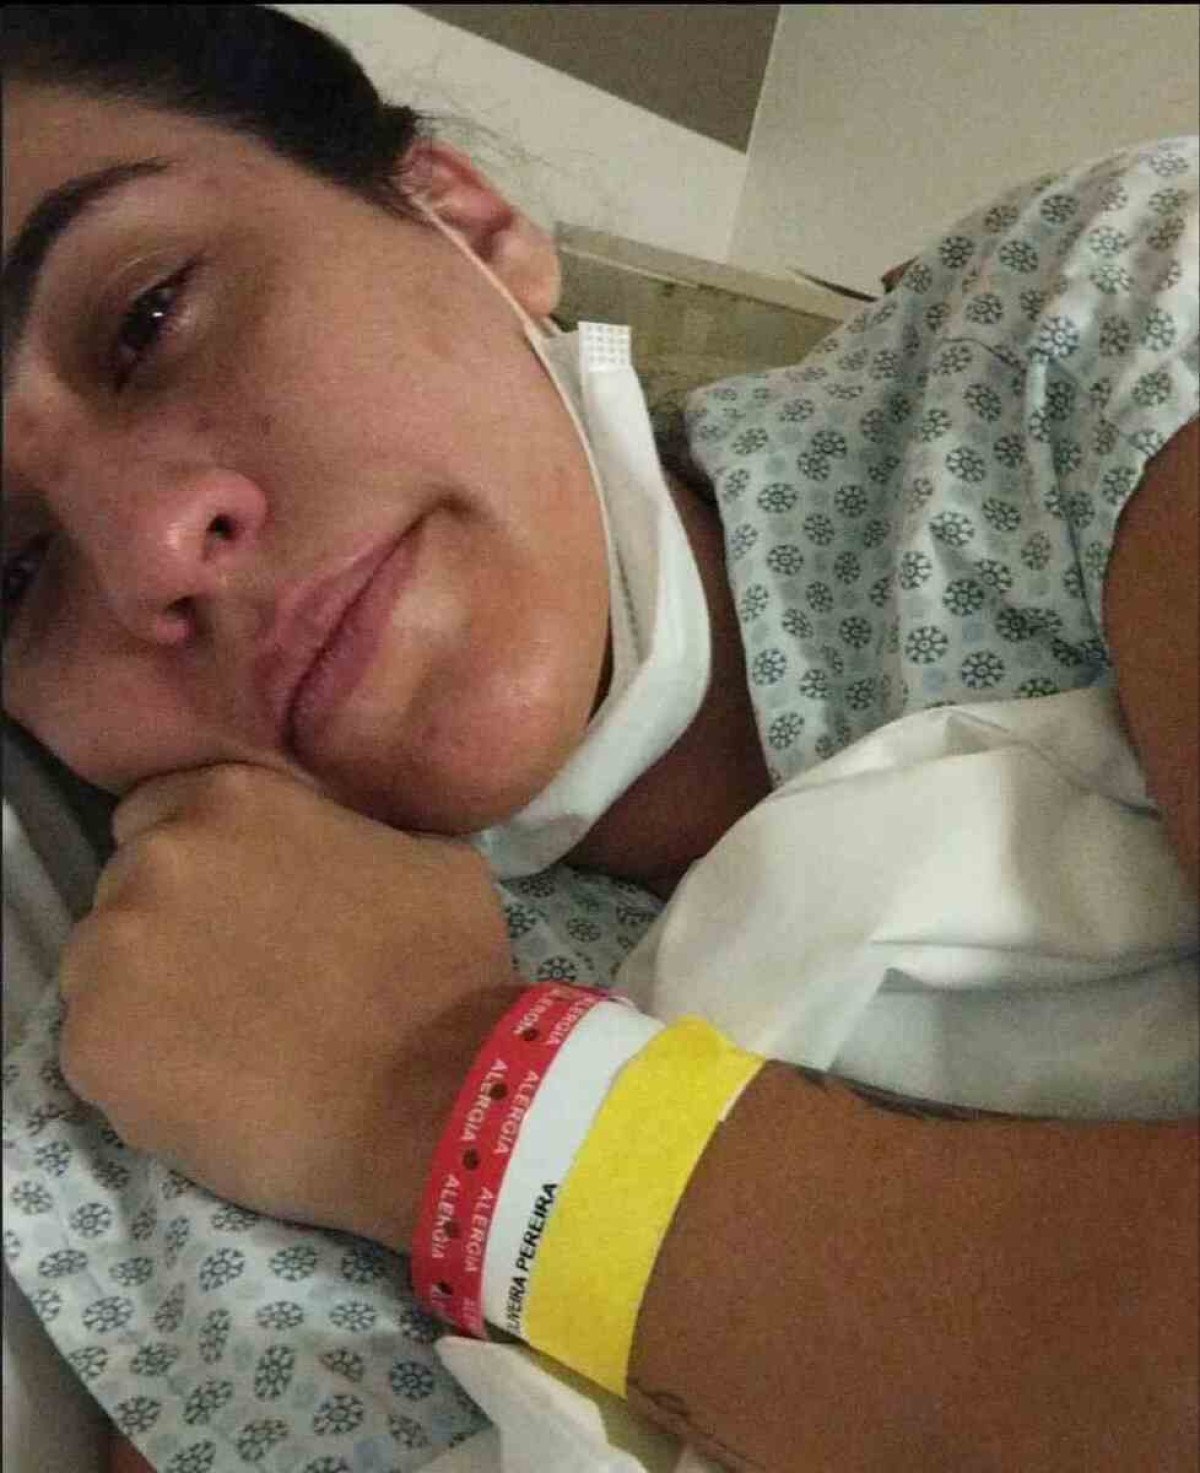 Gabriela de Oliveira no hospital, quando descobriu que tinha sofrido um aborto espontâneo. A foto foi publicada nas redes sociais, onde contou a experiência